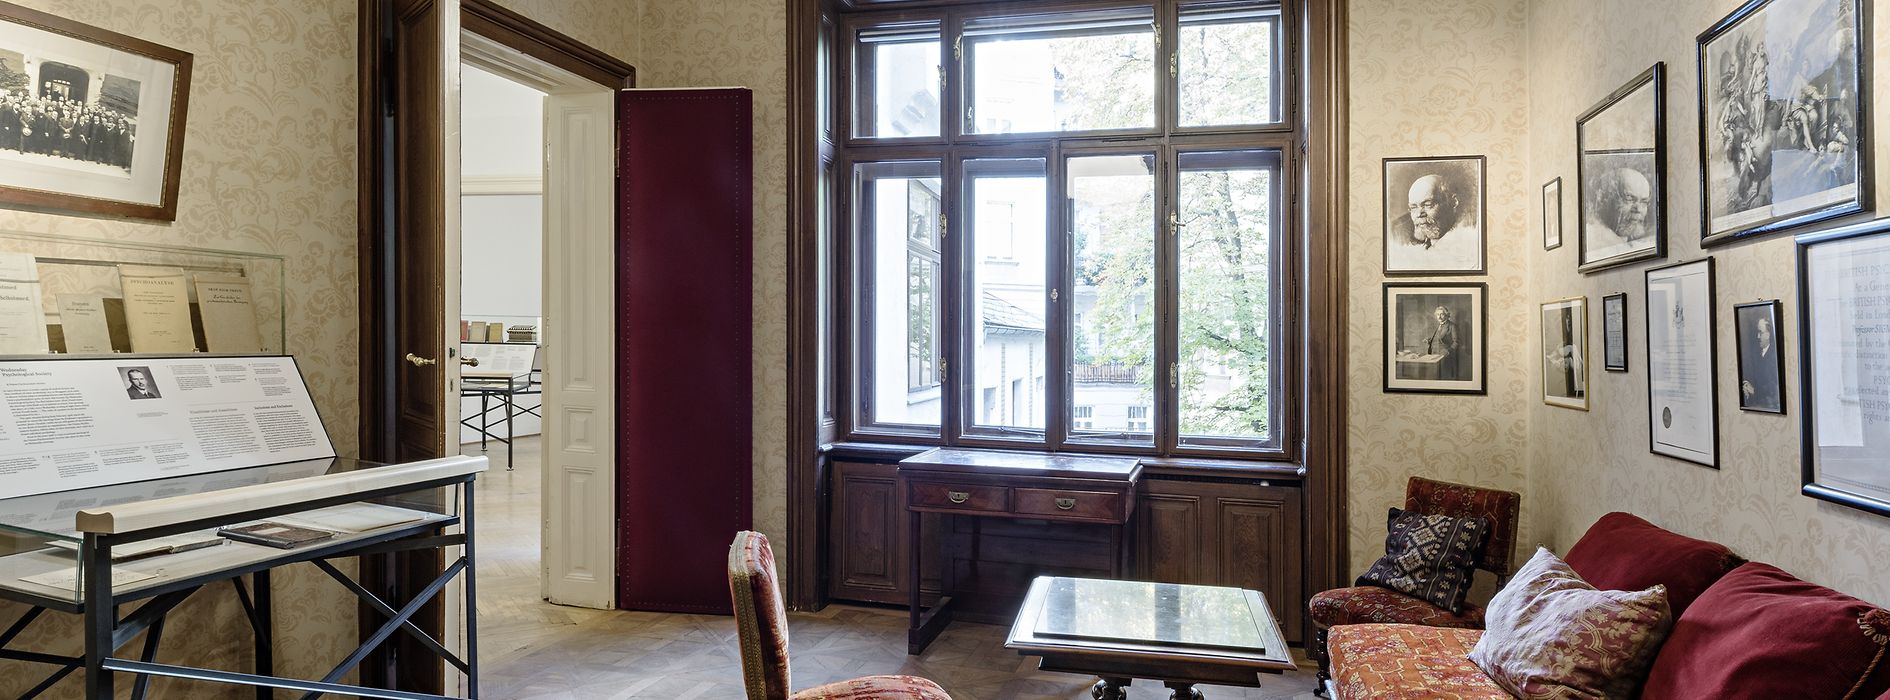 Sala d’aspetto con i mobili originali nel Museo di Sigmund Freud 